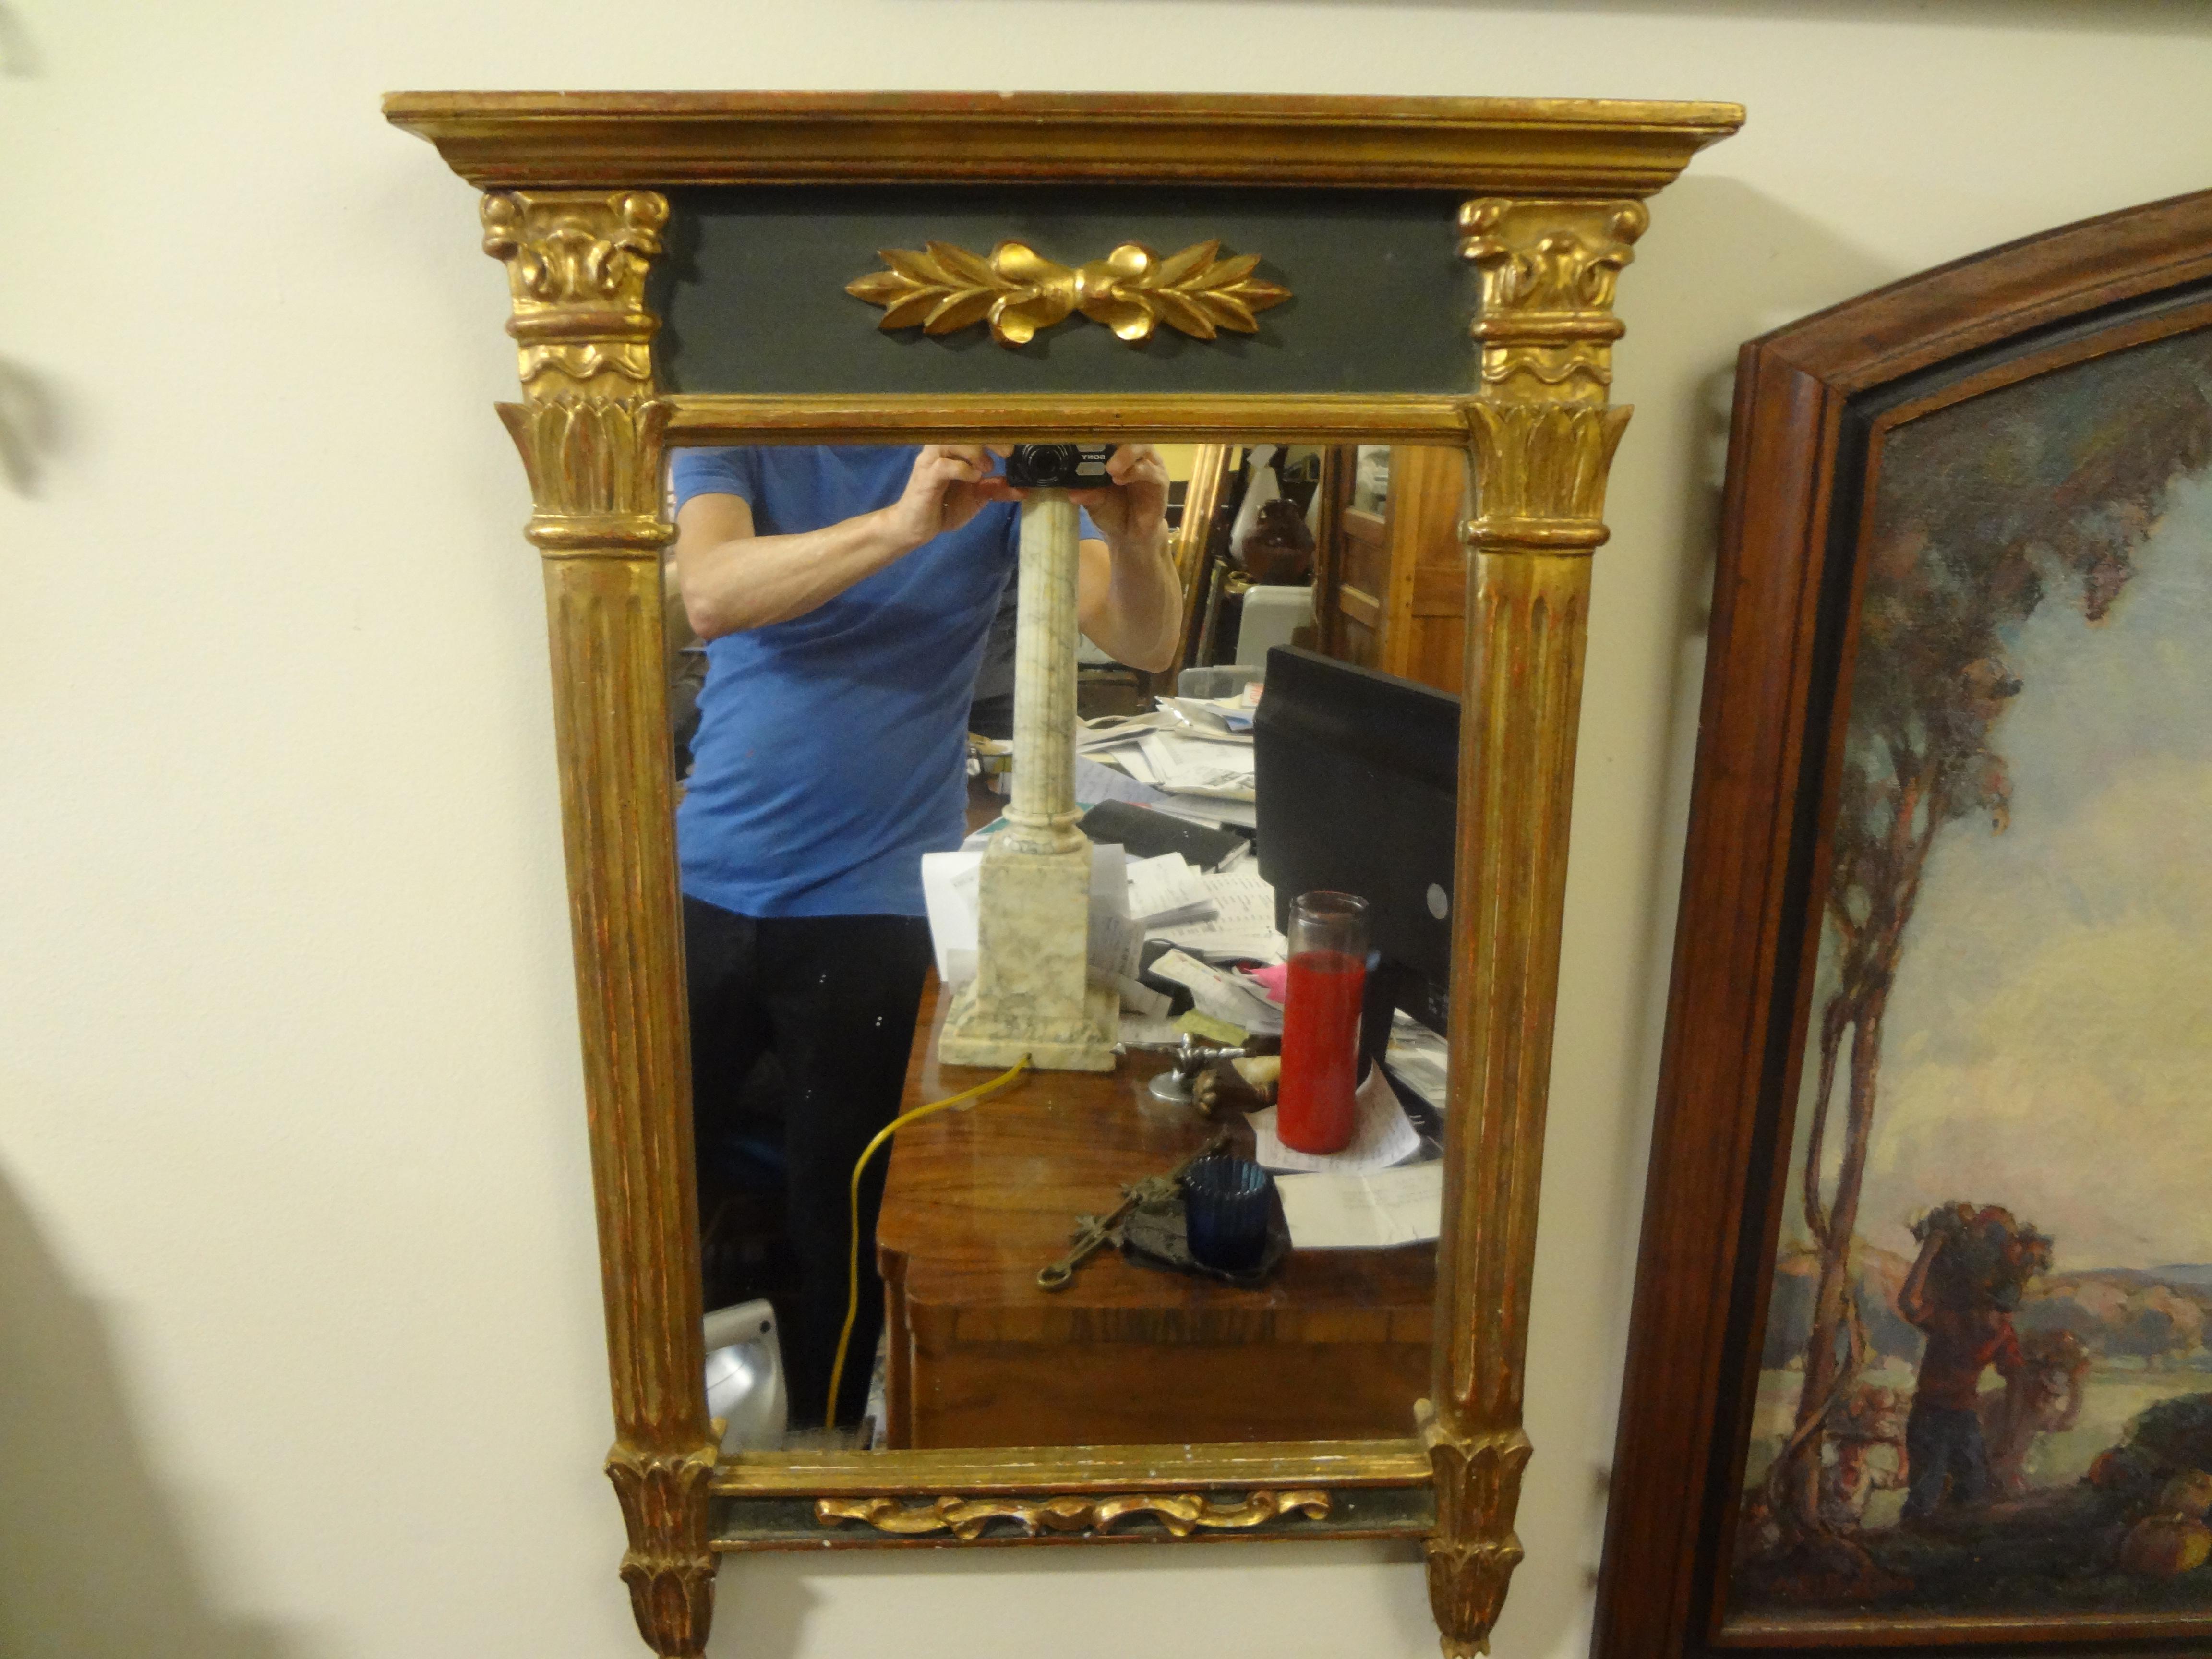 Charmante Französisch Louis XVI-Stil gemalt und vergoldet Spiegel. Dieser schöne traditionelle französische Vergoldungsspiegel wird auf beiden Seiten von Säulen flankiert. Unser französischer Spiegel im neoklassischen Louis-Stil stammt aus den